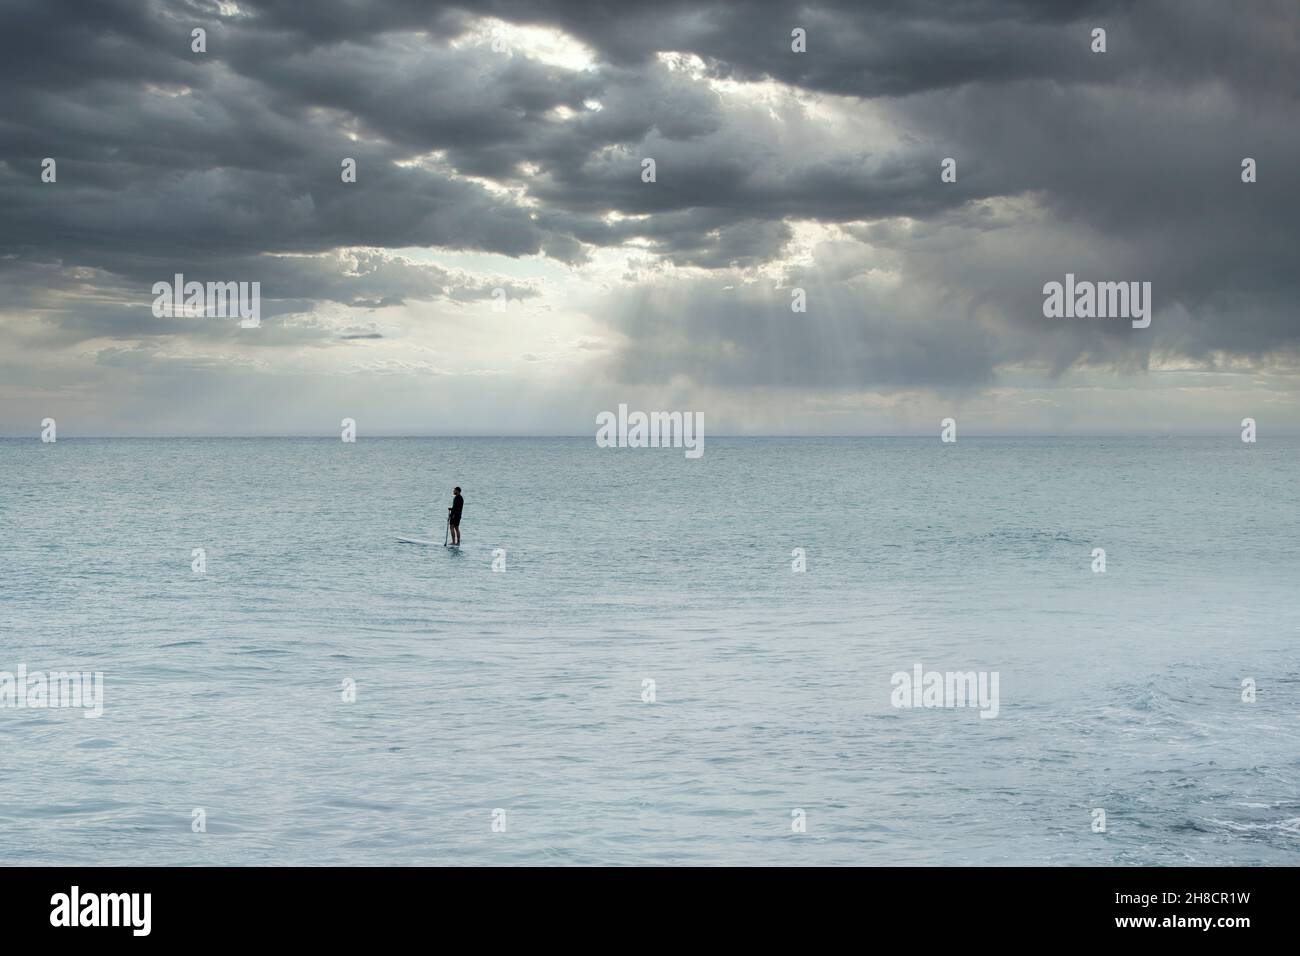 L'uomo solitario nel mezzo del Mar dei Caraibi si paddle su una tavola da paddle contro un cielo tempestoso a Playa del Carmen, Messico Foto Stock